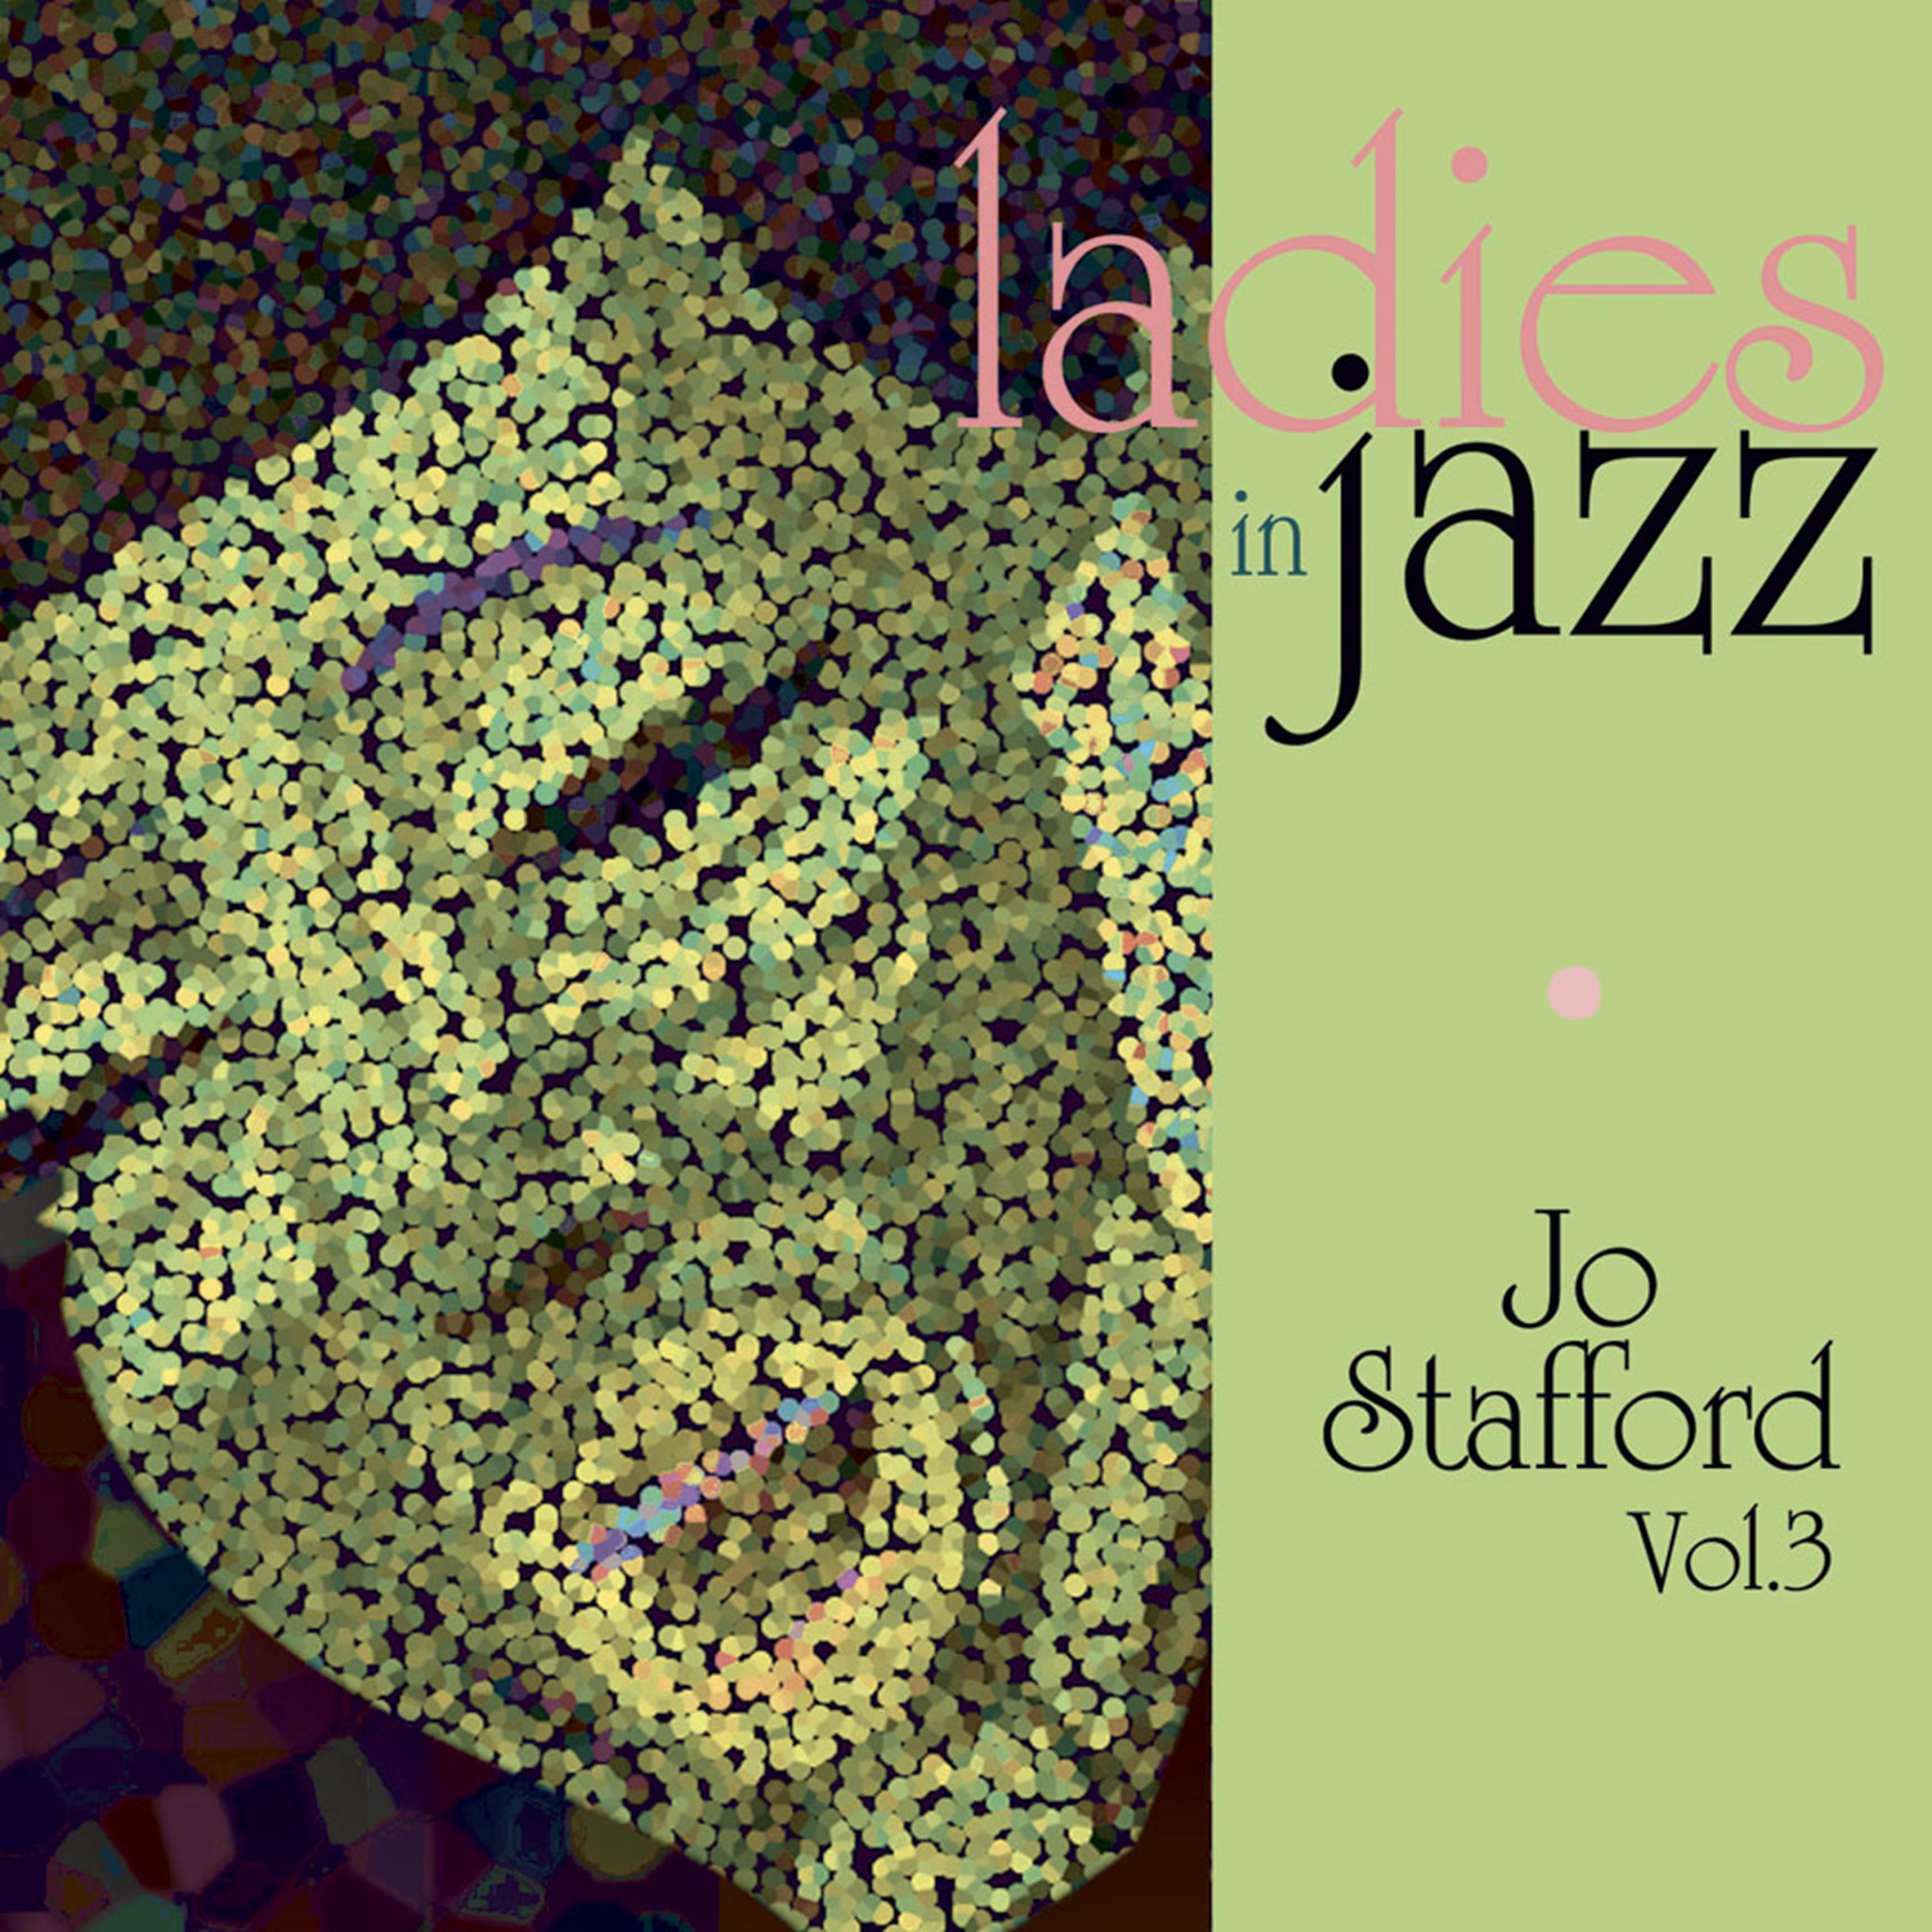 Ladies in Jazz - Jo Stafford, Vol. 3